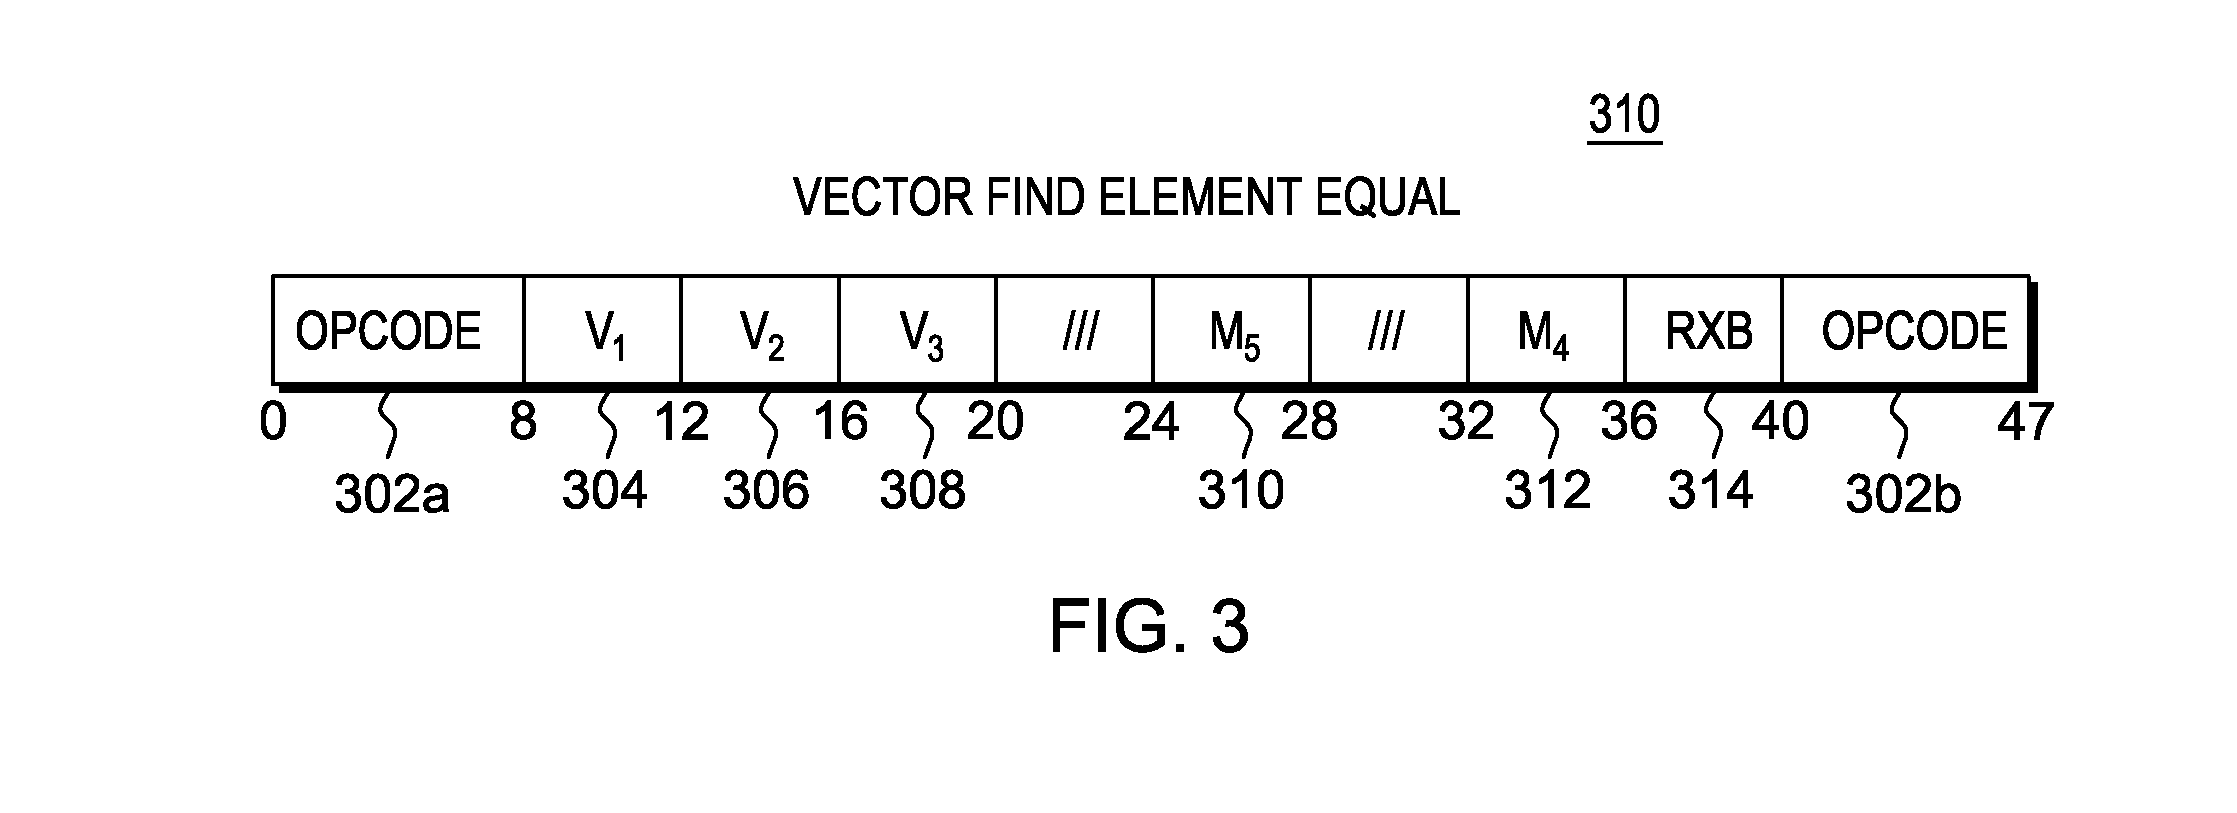 Vector find element equal instruction